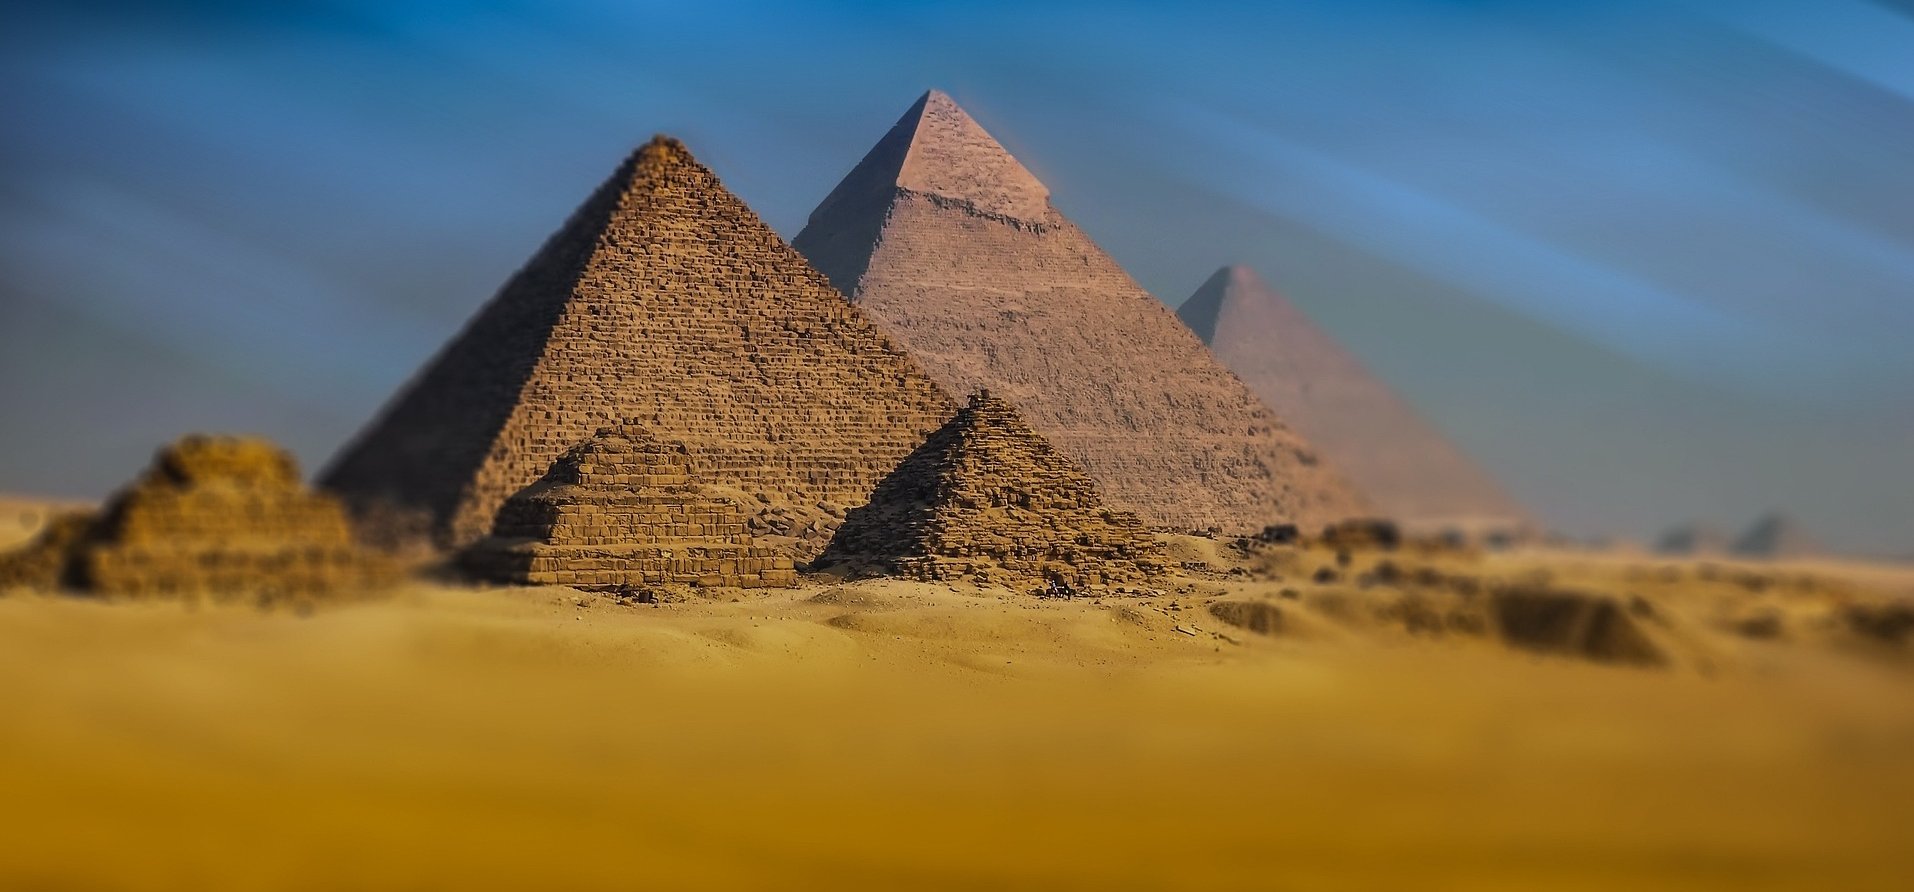 Elképesztő látvány: így néztek ki valójában az egyiptomi piramisok, miután több ezer évvel ezelőtt elkészültek